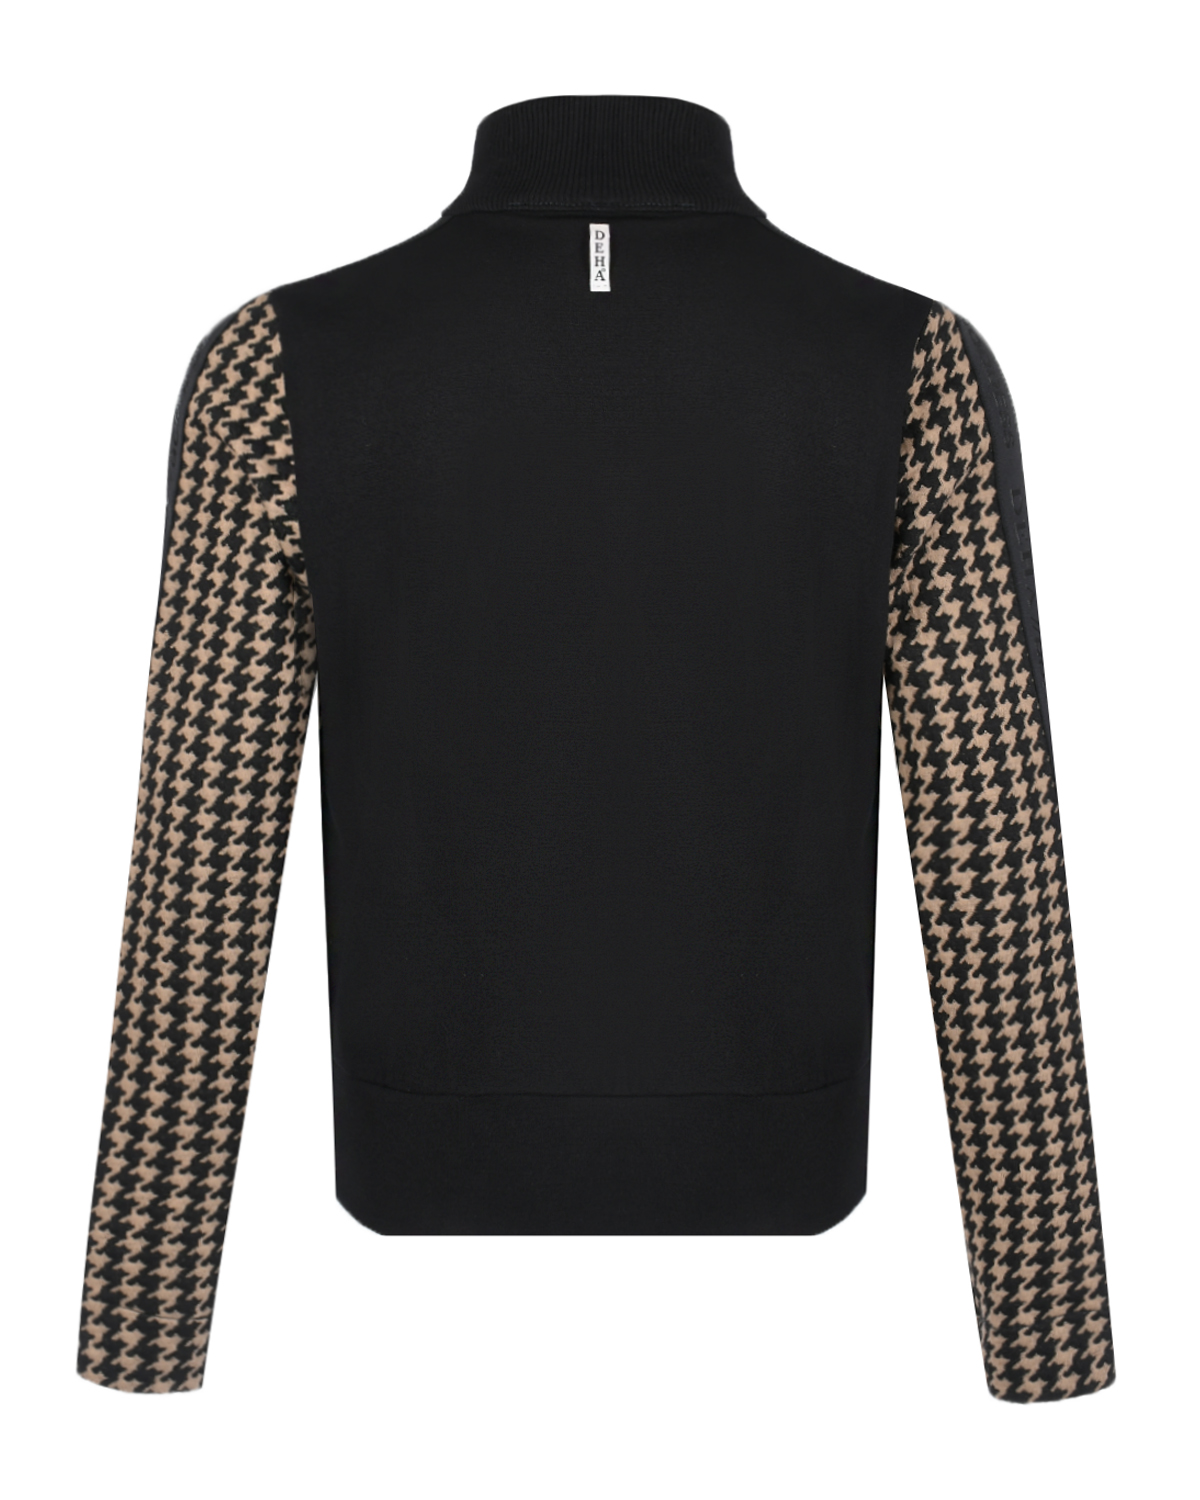 Спортивная куртка с принтом "pied-de-poule" Deha, размер 38, цвет черный - фото 5